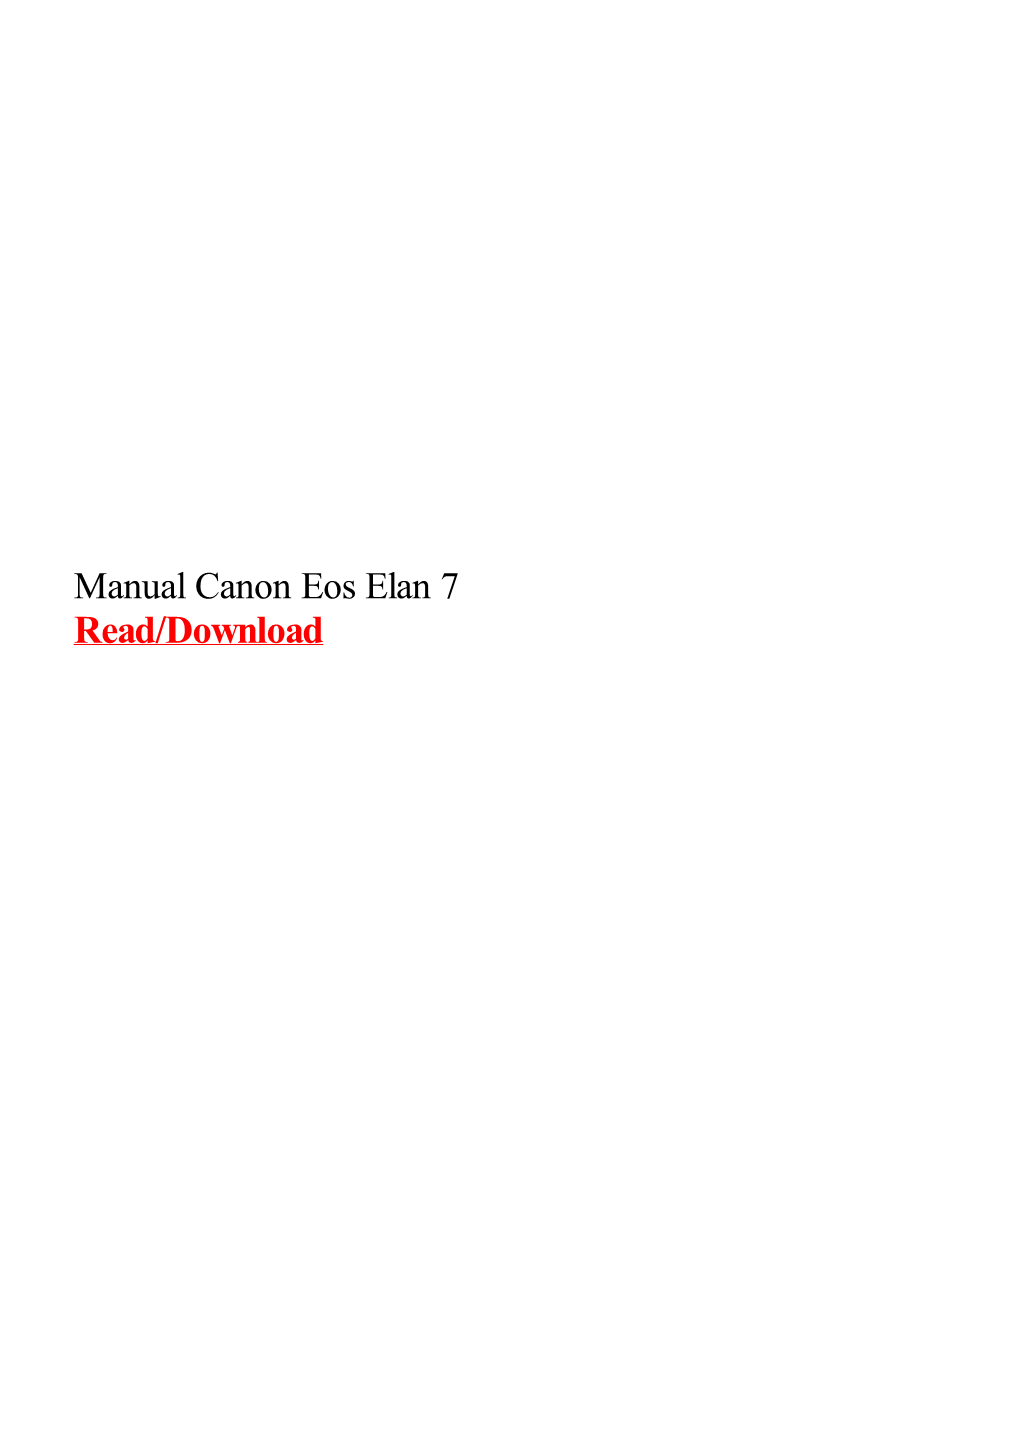 Manual Canon Eos Elan 7.Pdf